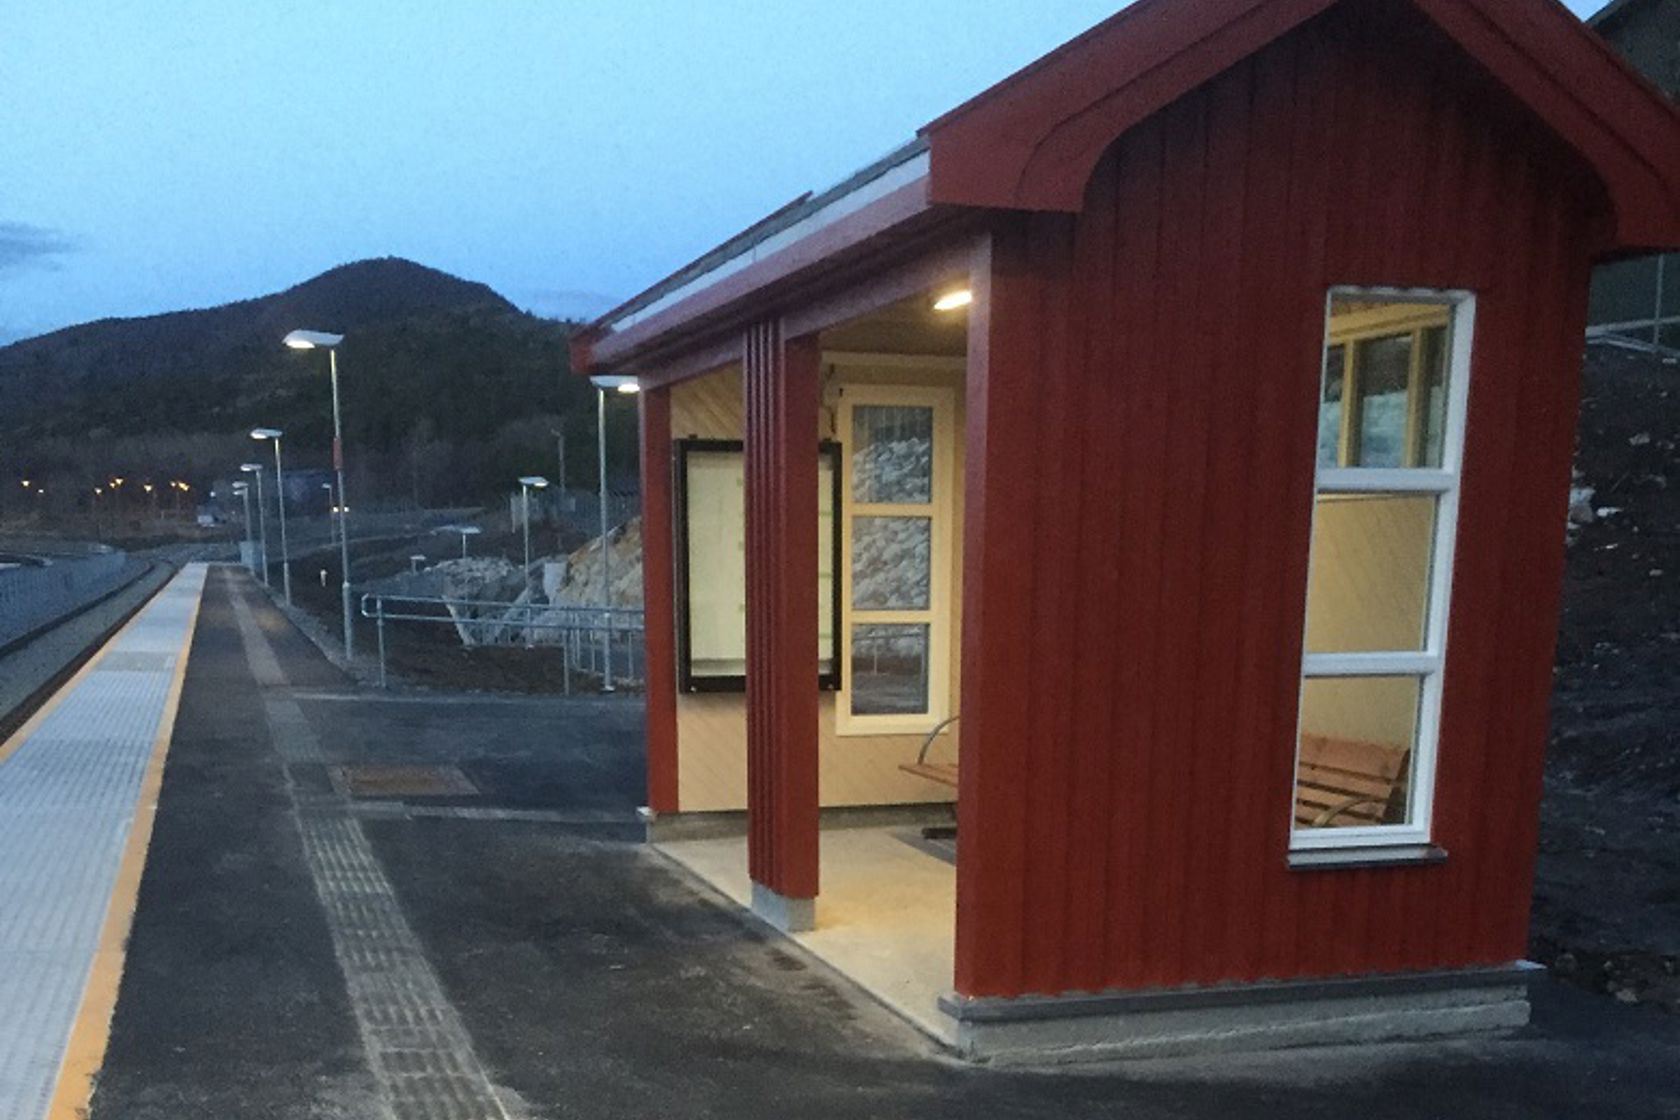 Exterior view of Oteråga stop